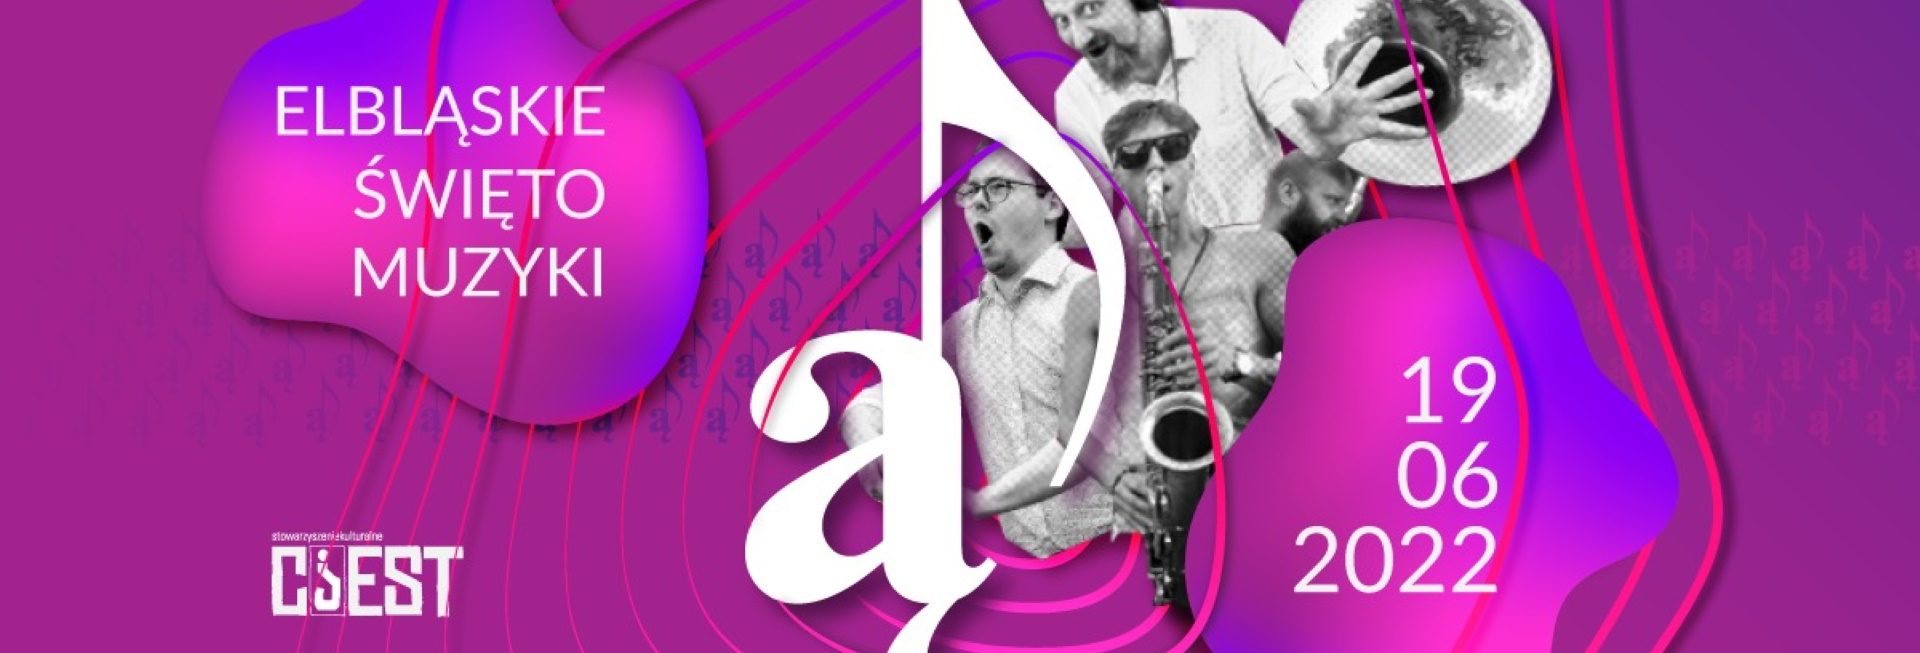 Plakat graficzny zapraszający do Elbląga na dzień pełen muzyki Elbląskie Święto Muzyki Elbląg 2022.